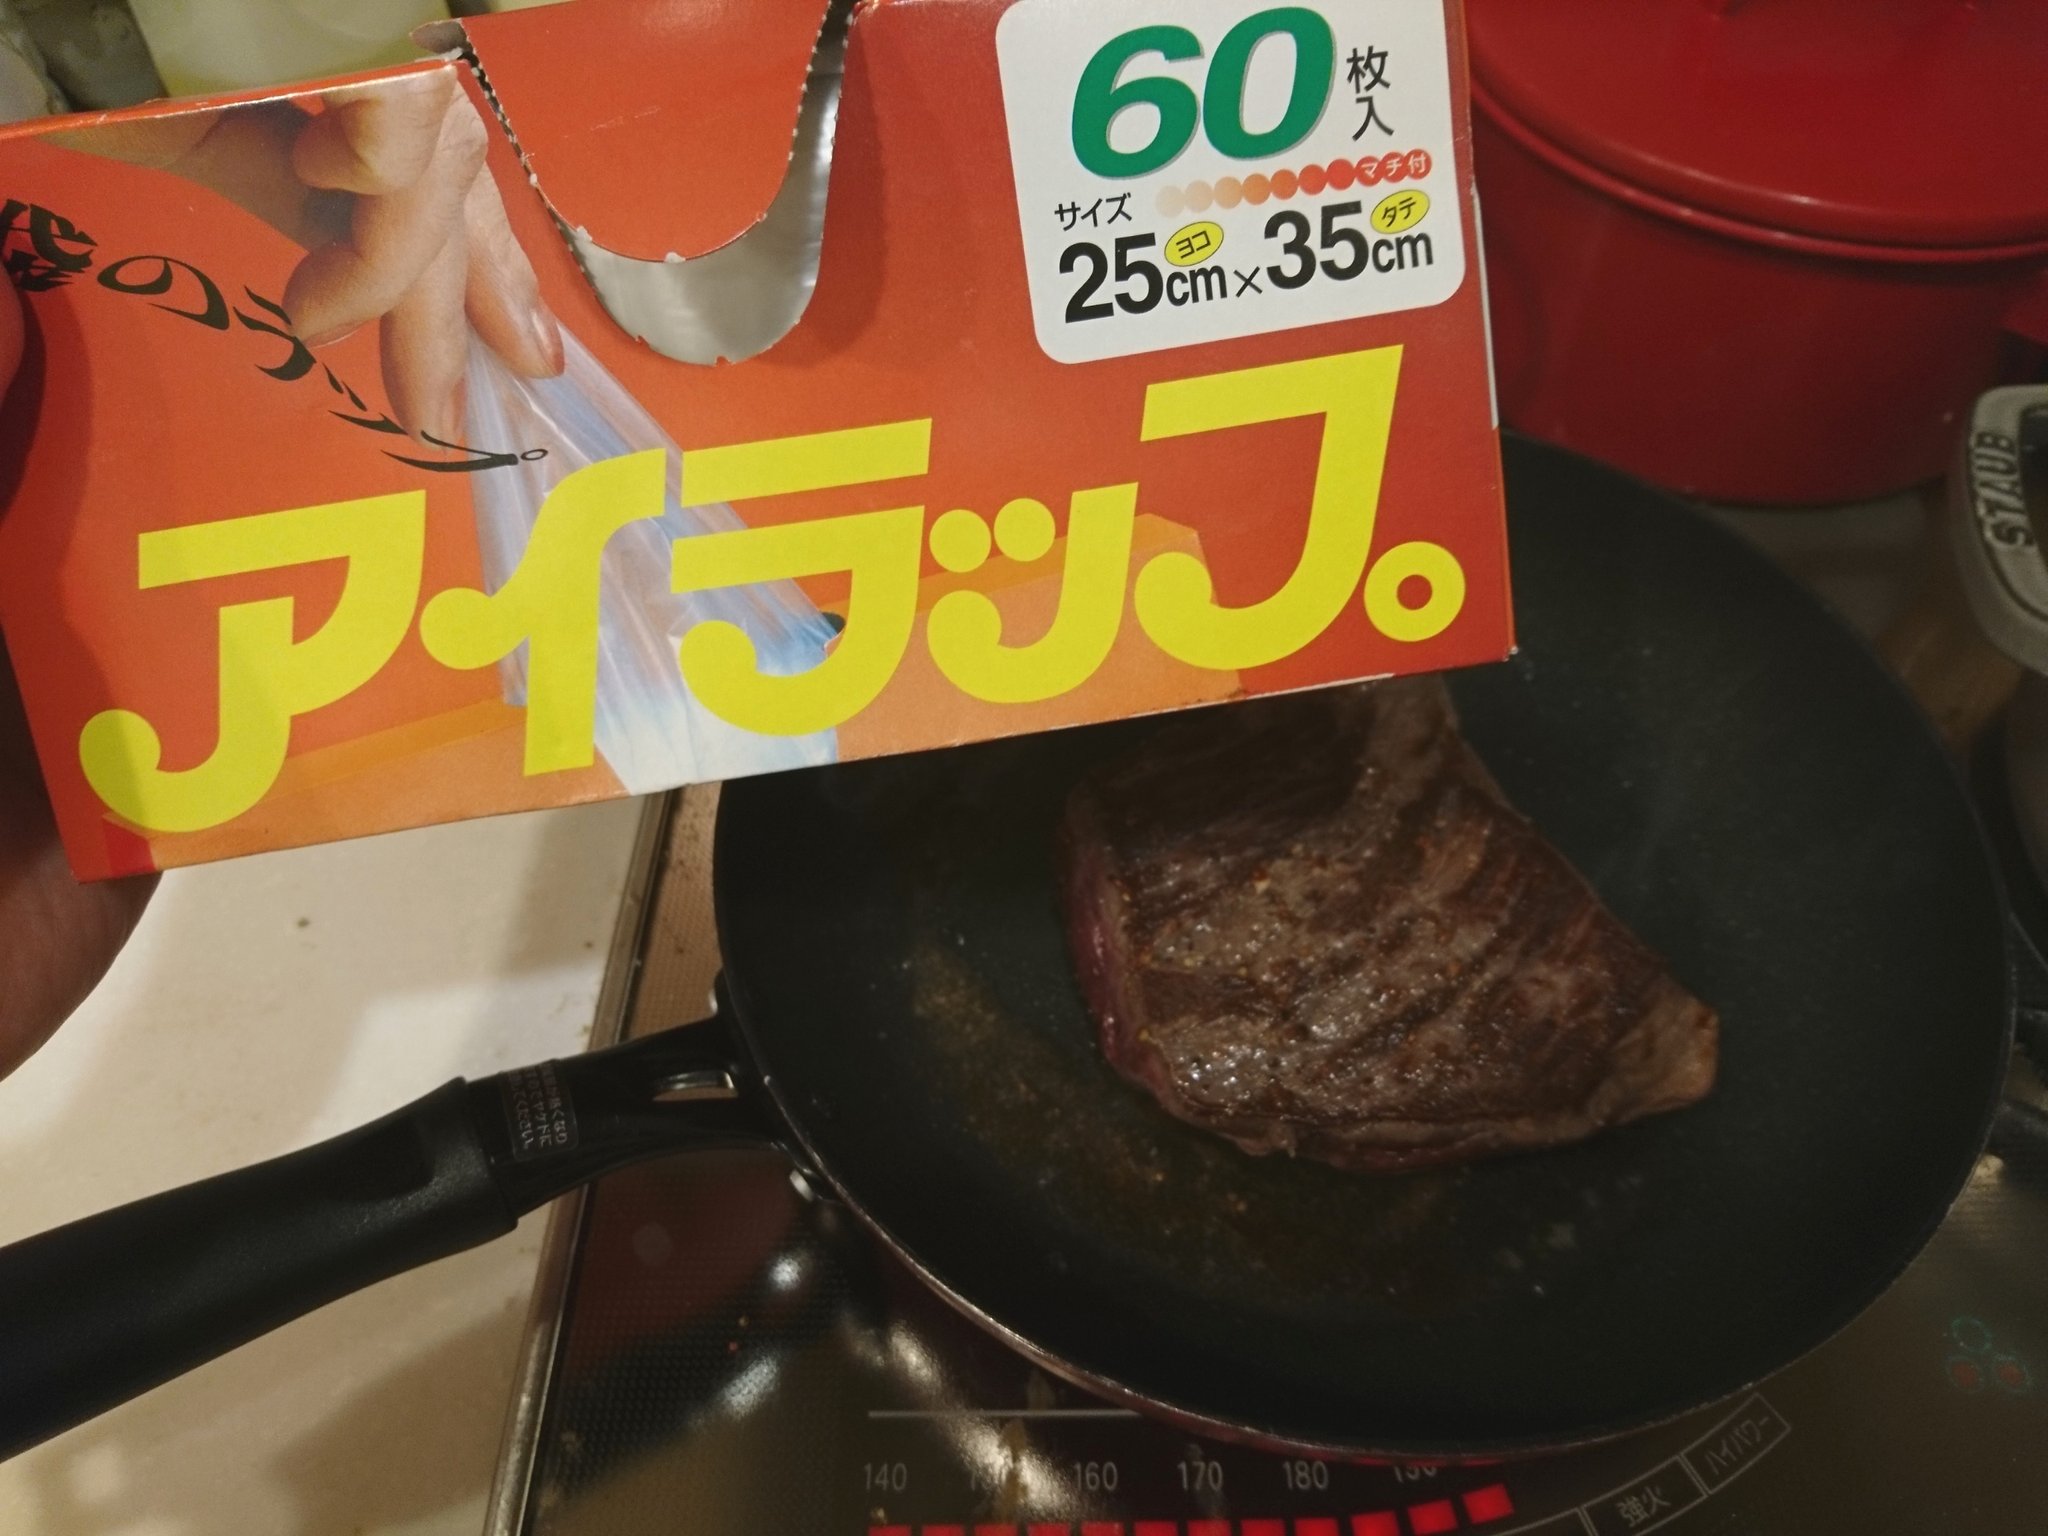 田窪 綾 食のライター ローストビーフ レシピは料理教室オルポノキッチンで教えてもらった低温調理法で いつも耐熱100 のジップロックを使うんですが 今日はお初のアイラップ 見た目普通のビニールですが 30 100 強までいける子なんです うちは炊飯